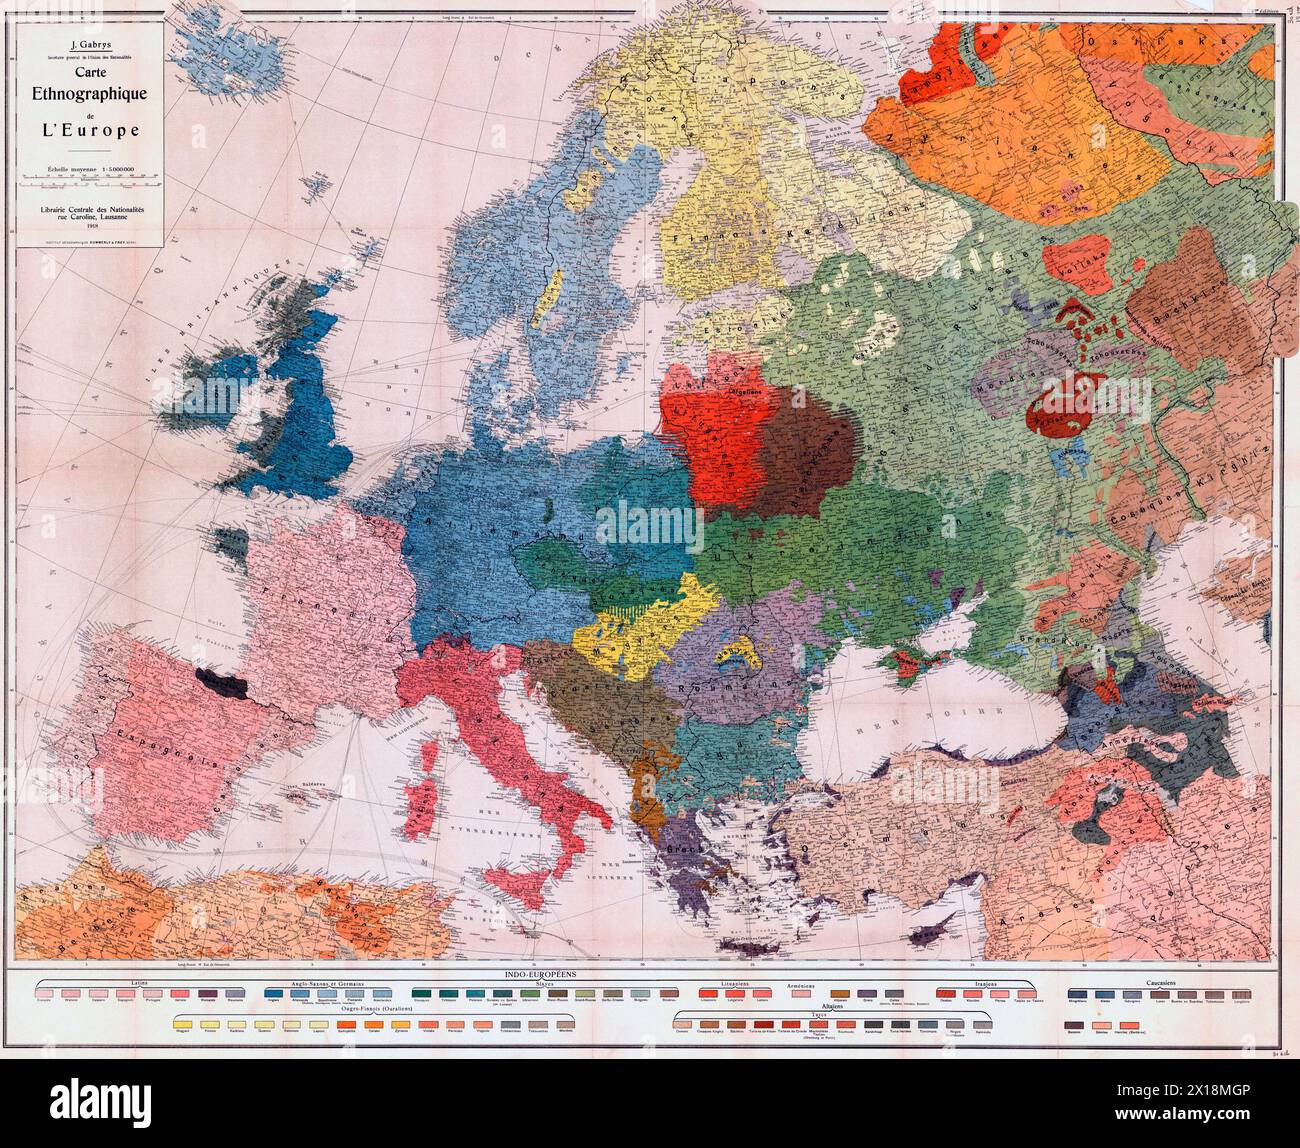 Carte ethnographique suisse de l'Europe publiée en 1918. Titre original : carte ethnographique de l'Europe. Banque D'Images